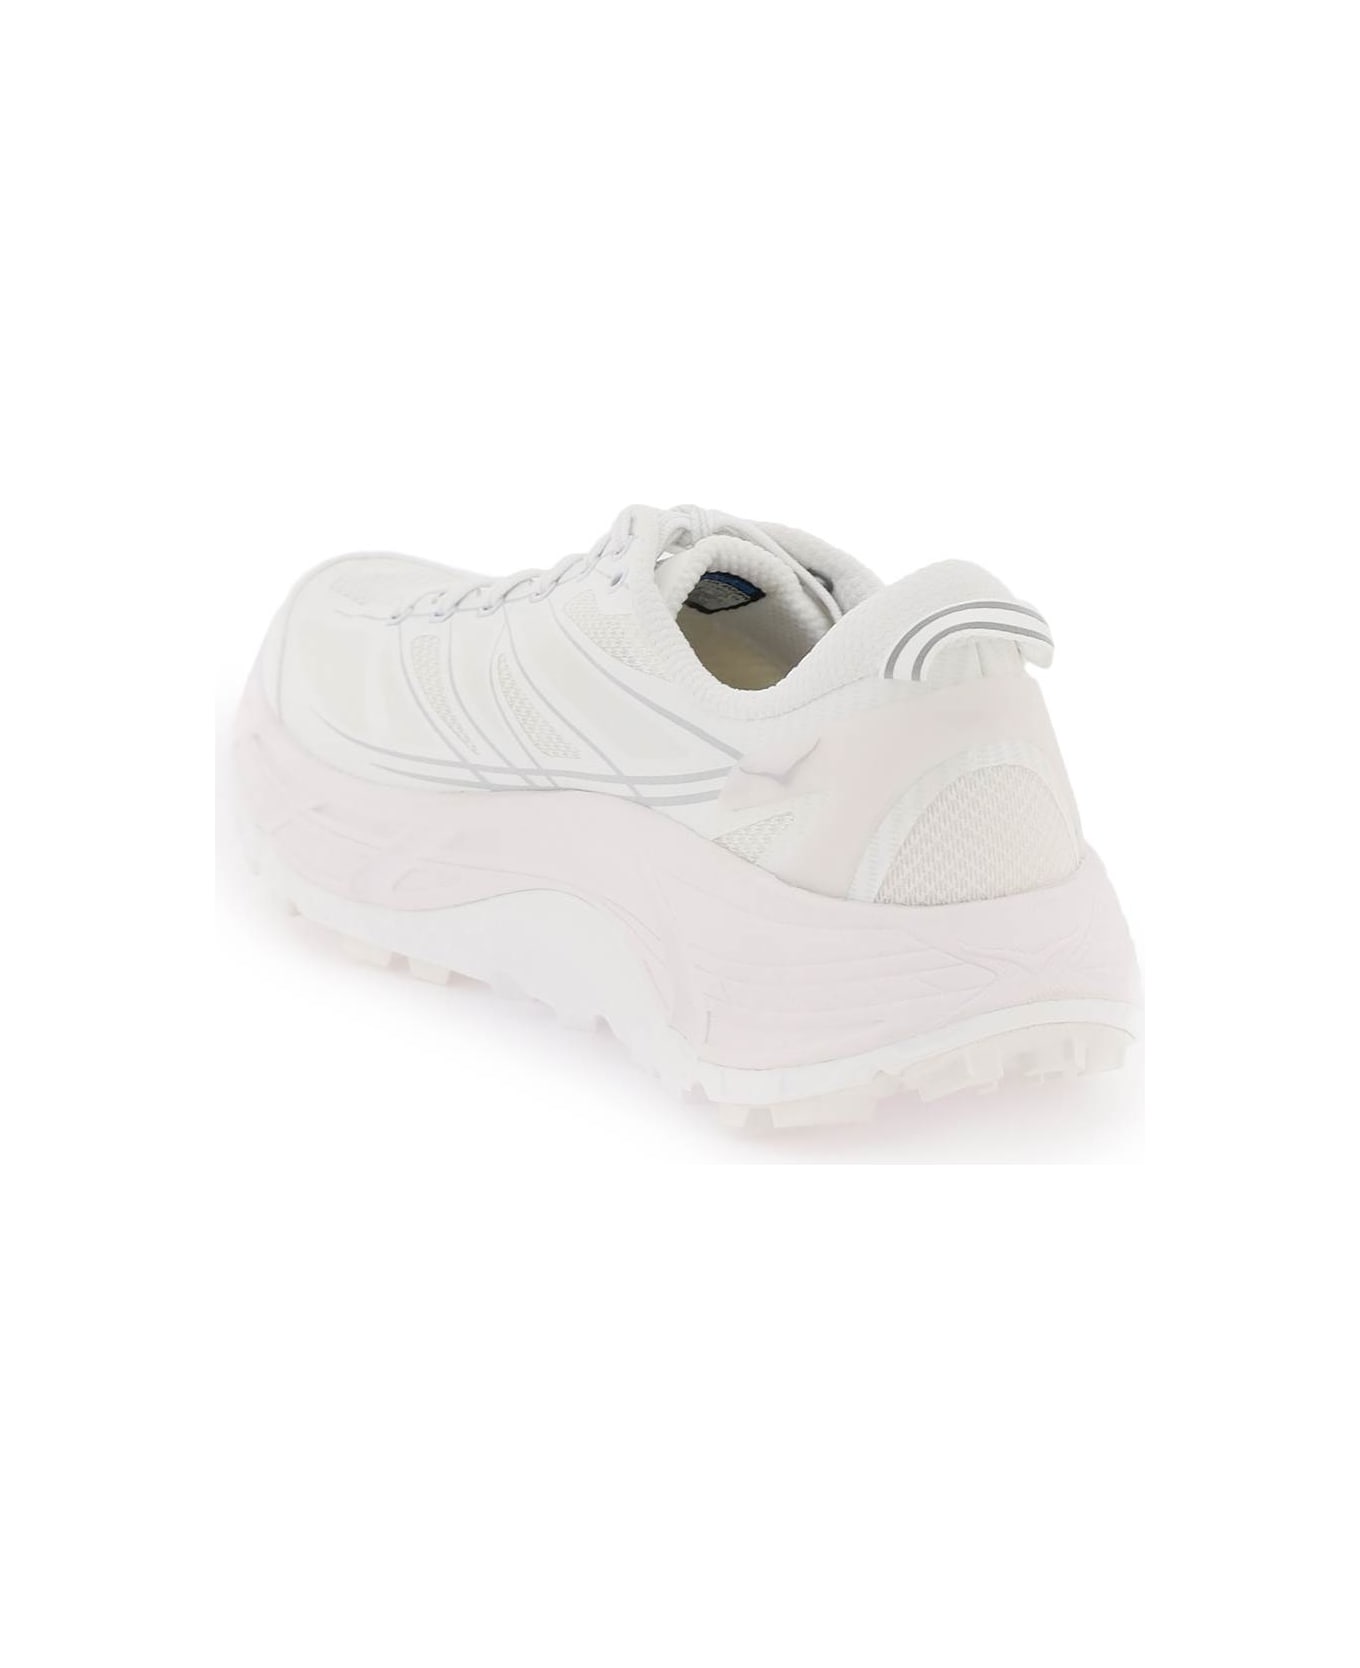 Hoka 'mafate Speed 2' Sneakers - WHITE LUNAR ROCK (White)